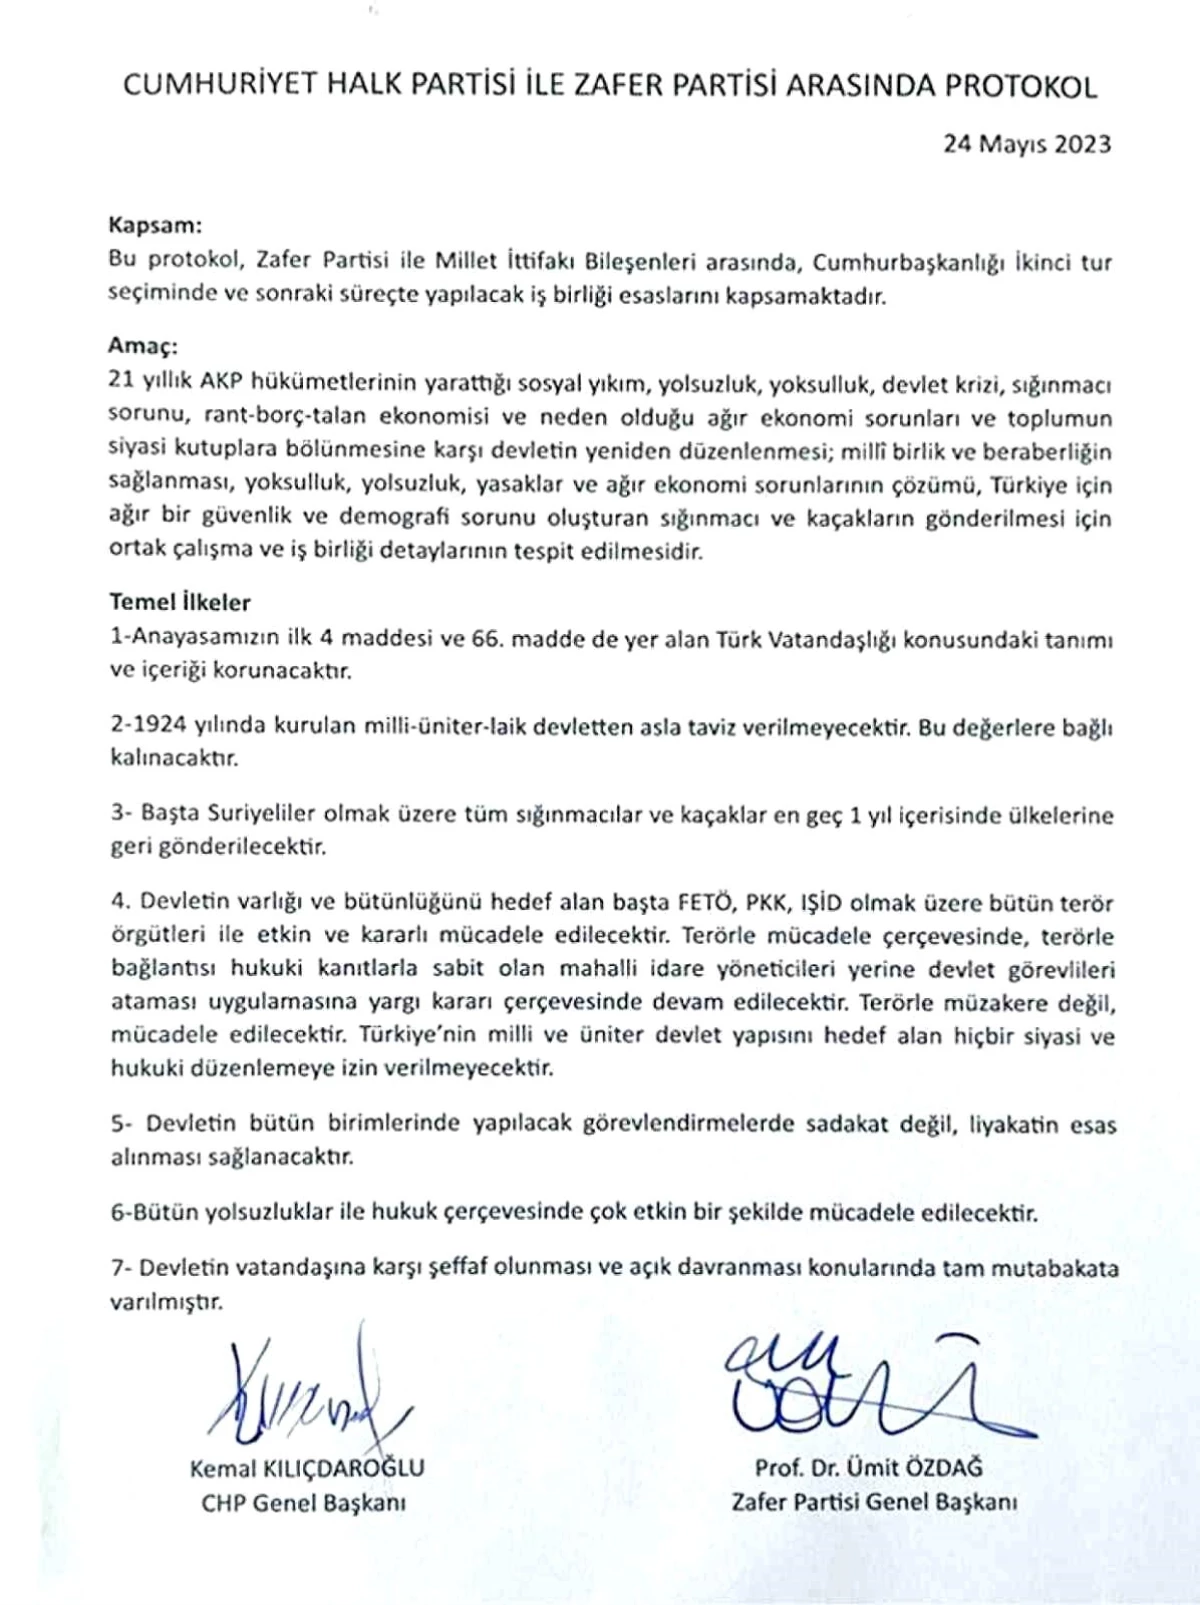 Zafer Partisi ve CHP Arasında Protokol Yayımlandı